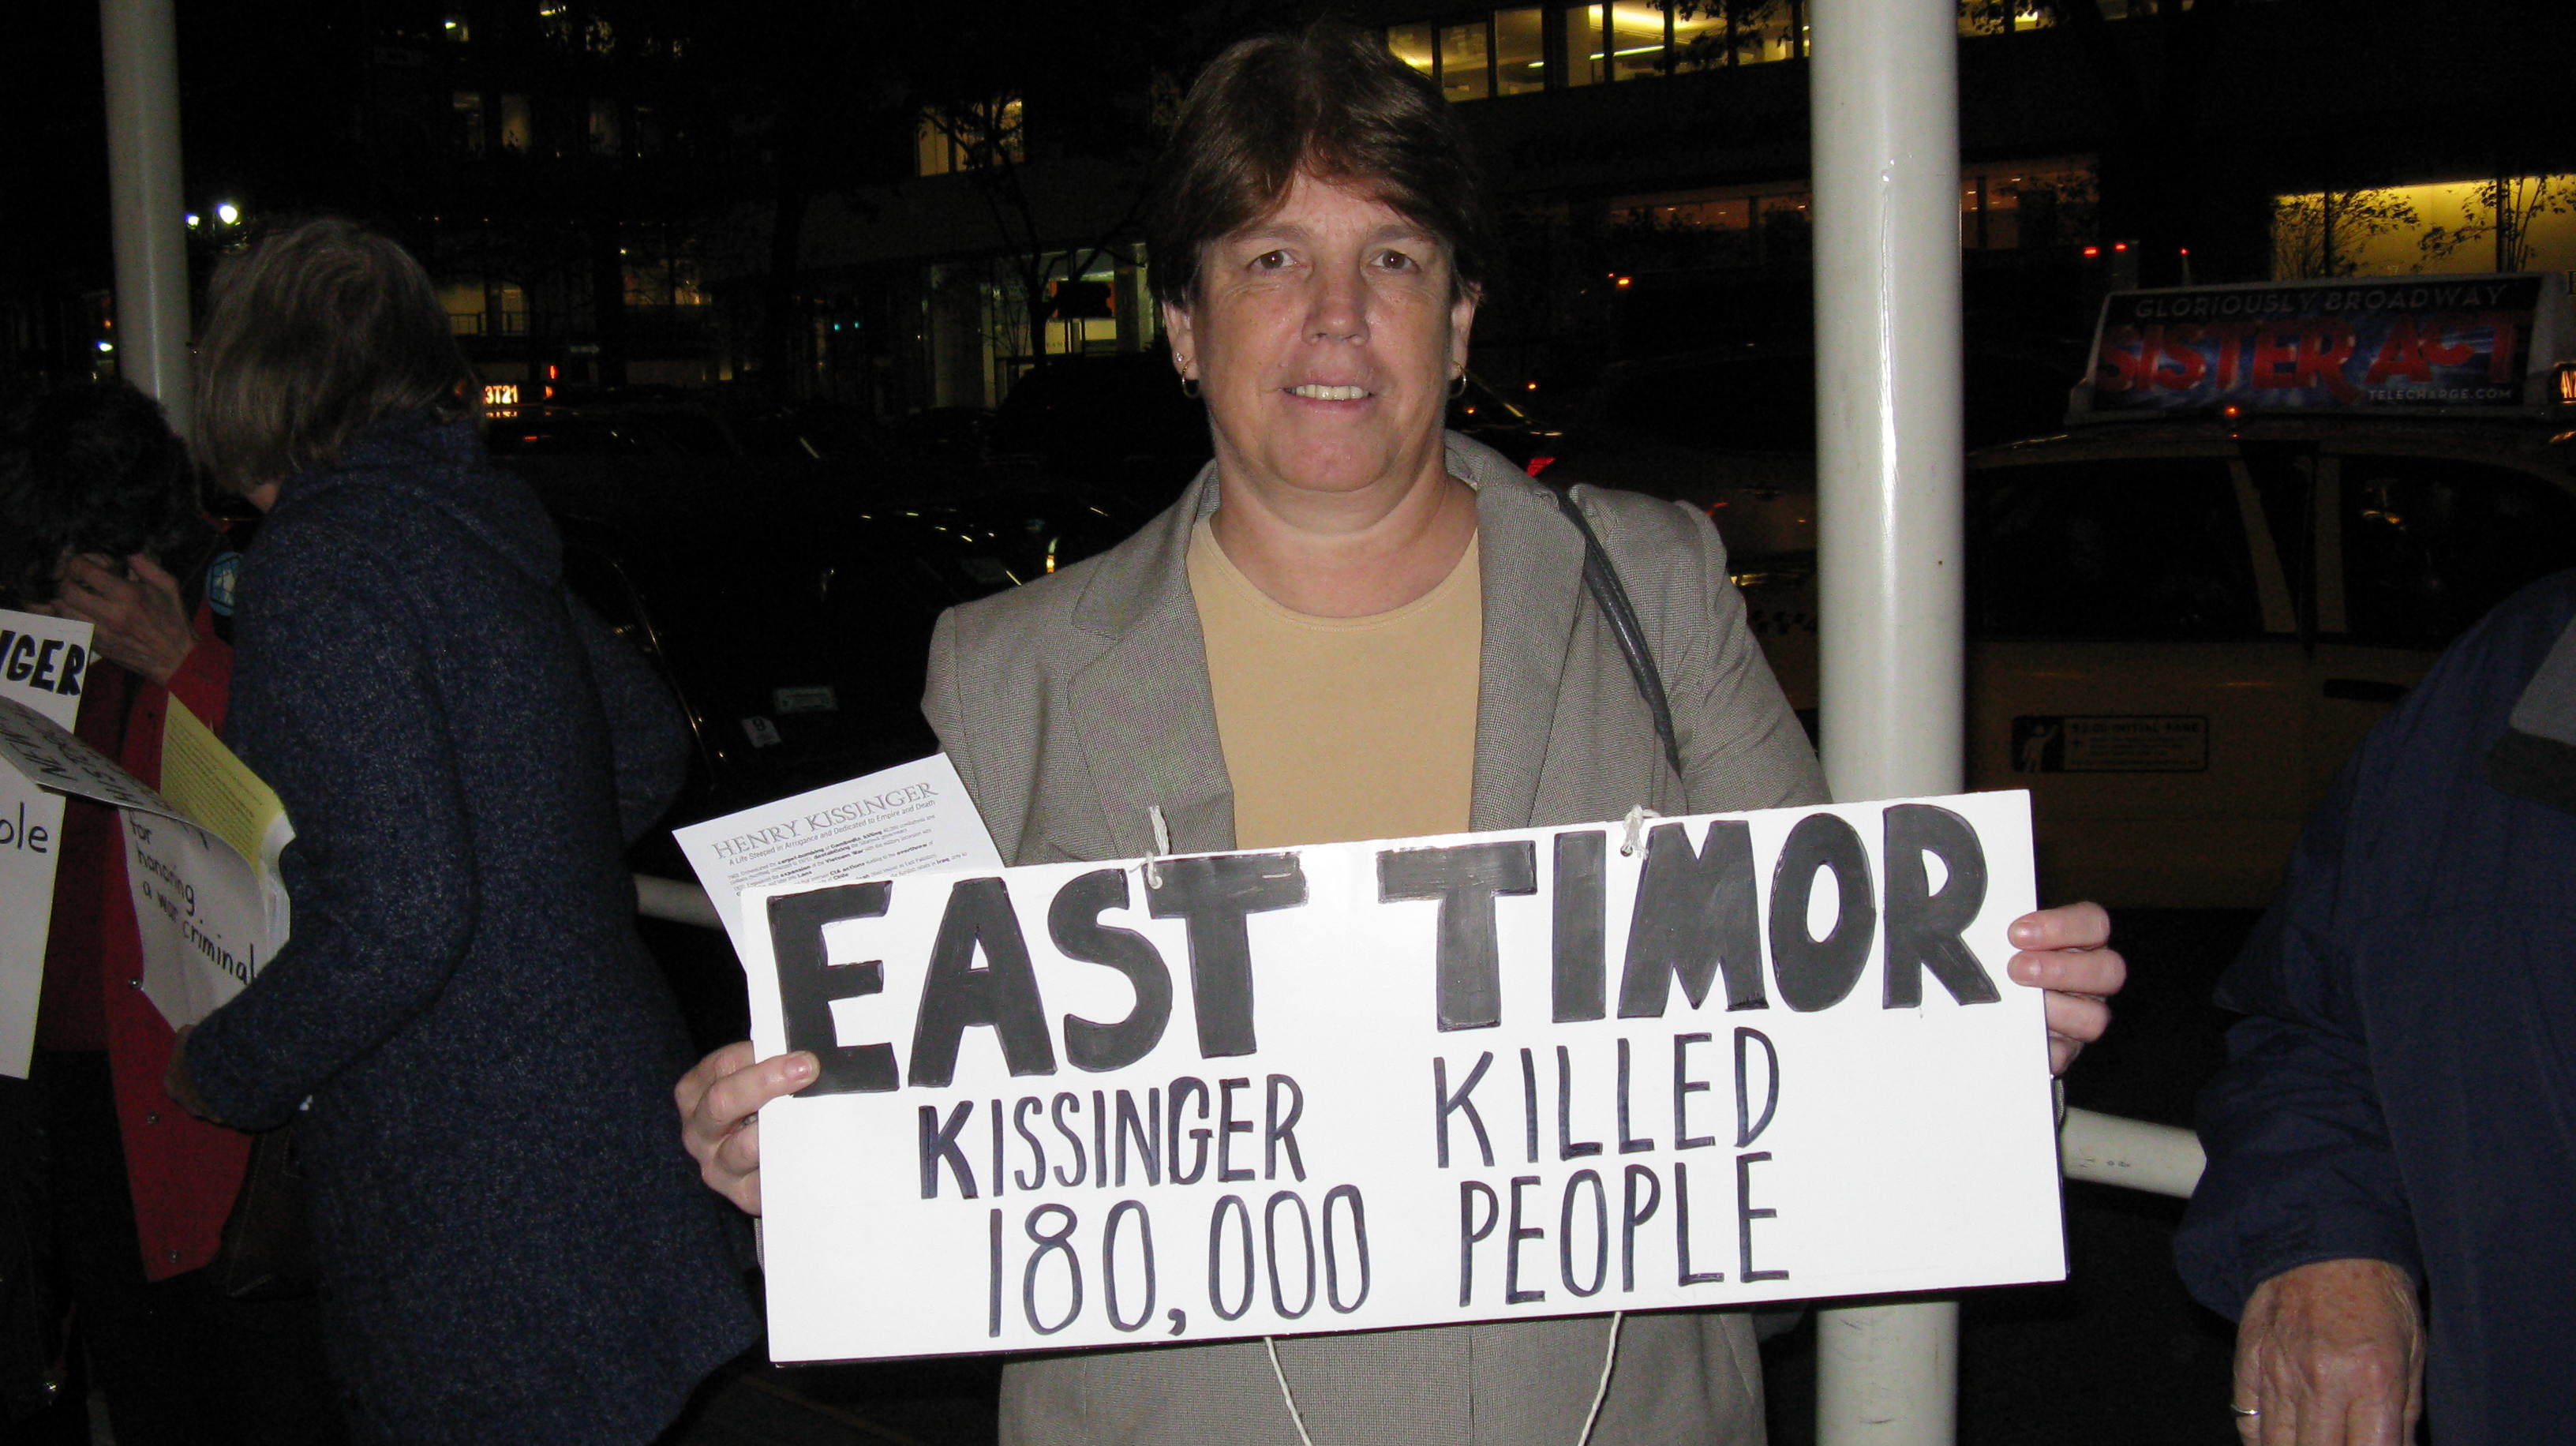 East Timor: Kissinger Killed 180,000 People